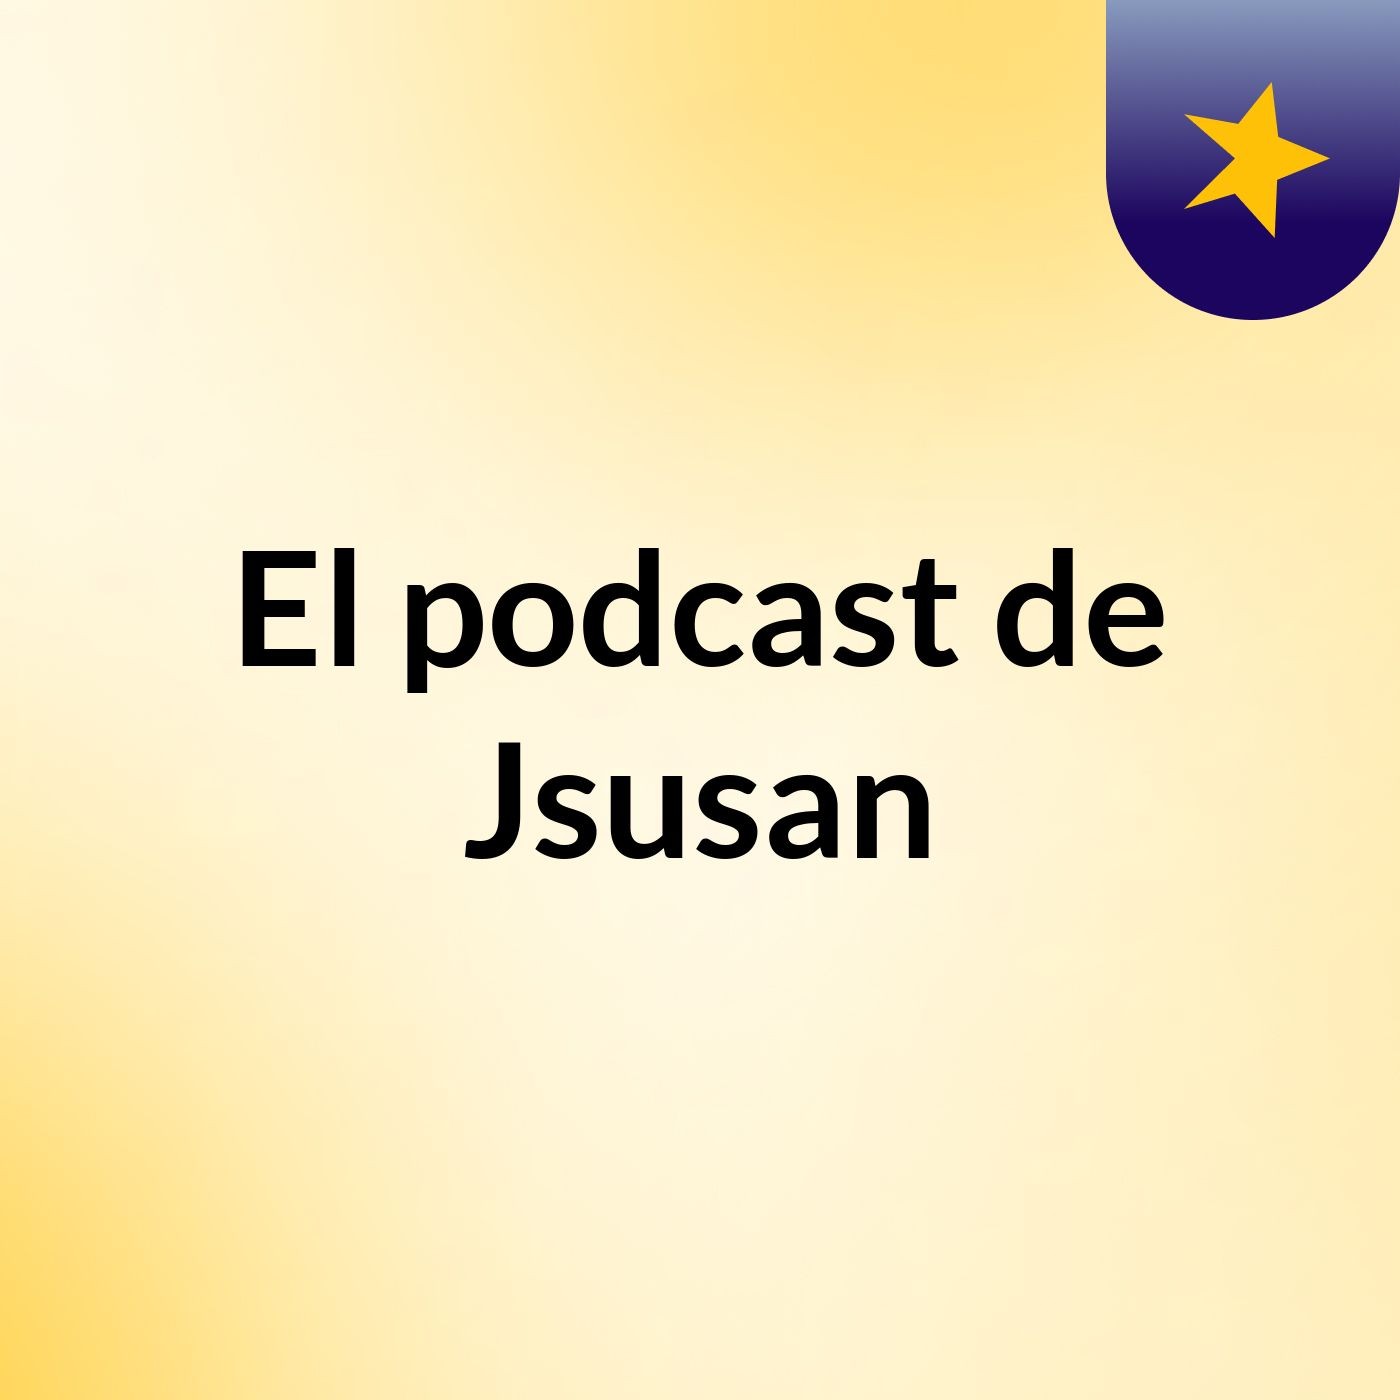 El podcast de Jsusan